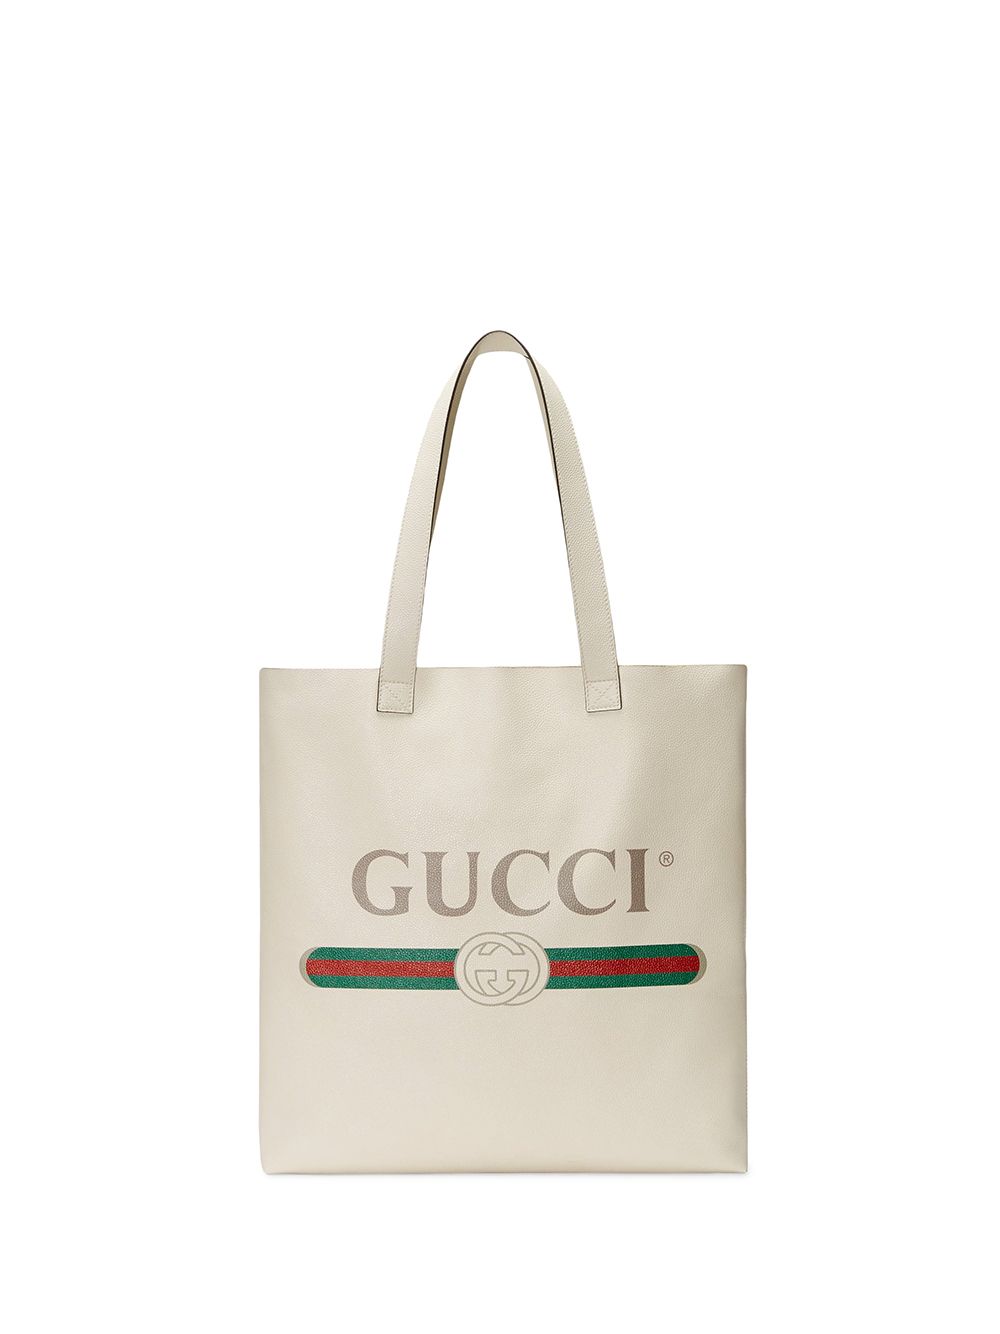 фото Gucci сумка-тоут с логотипом gucci